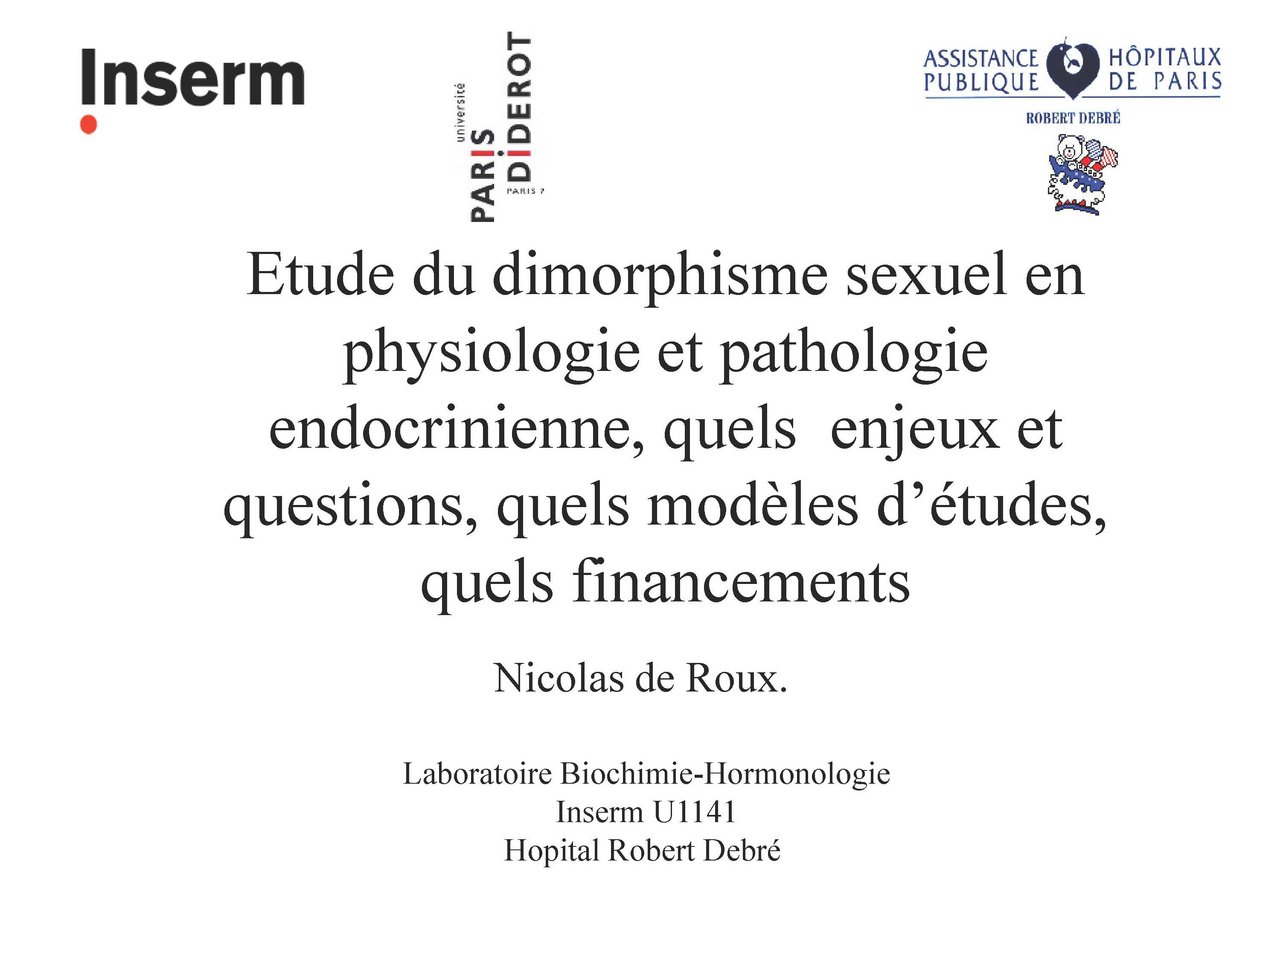 Visuel pour Nicolas de Roux "Etude du dimorphisme sexuel en physiologie et pathologie endocrinienne, quels enjeux et questions, quels modèles d’études, quels financements ? "